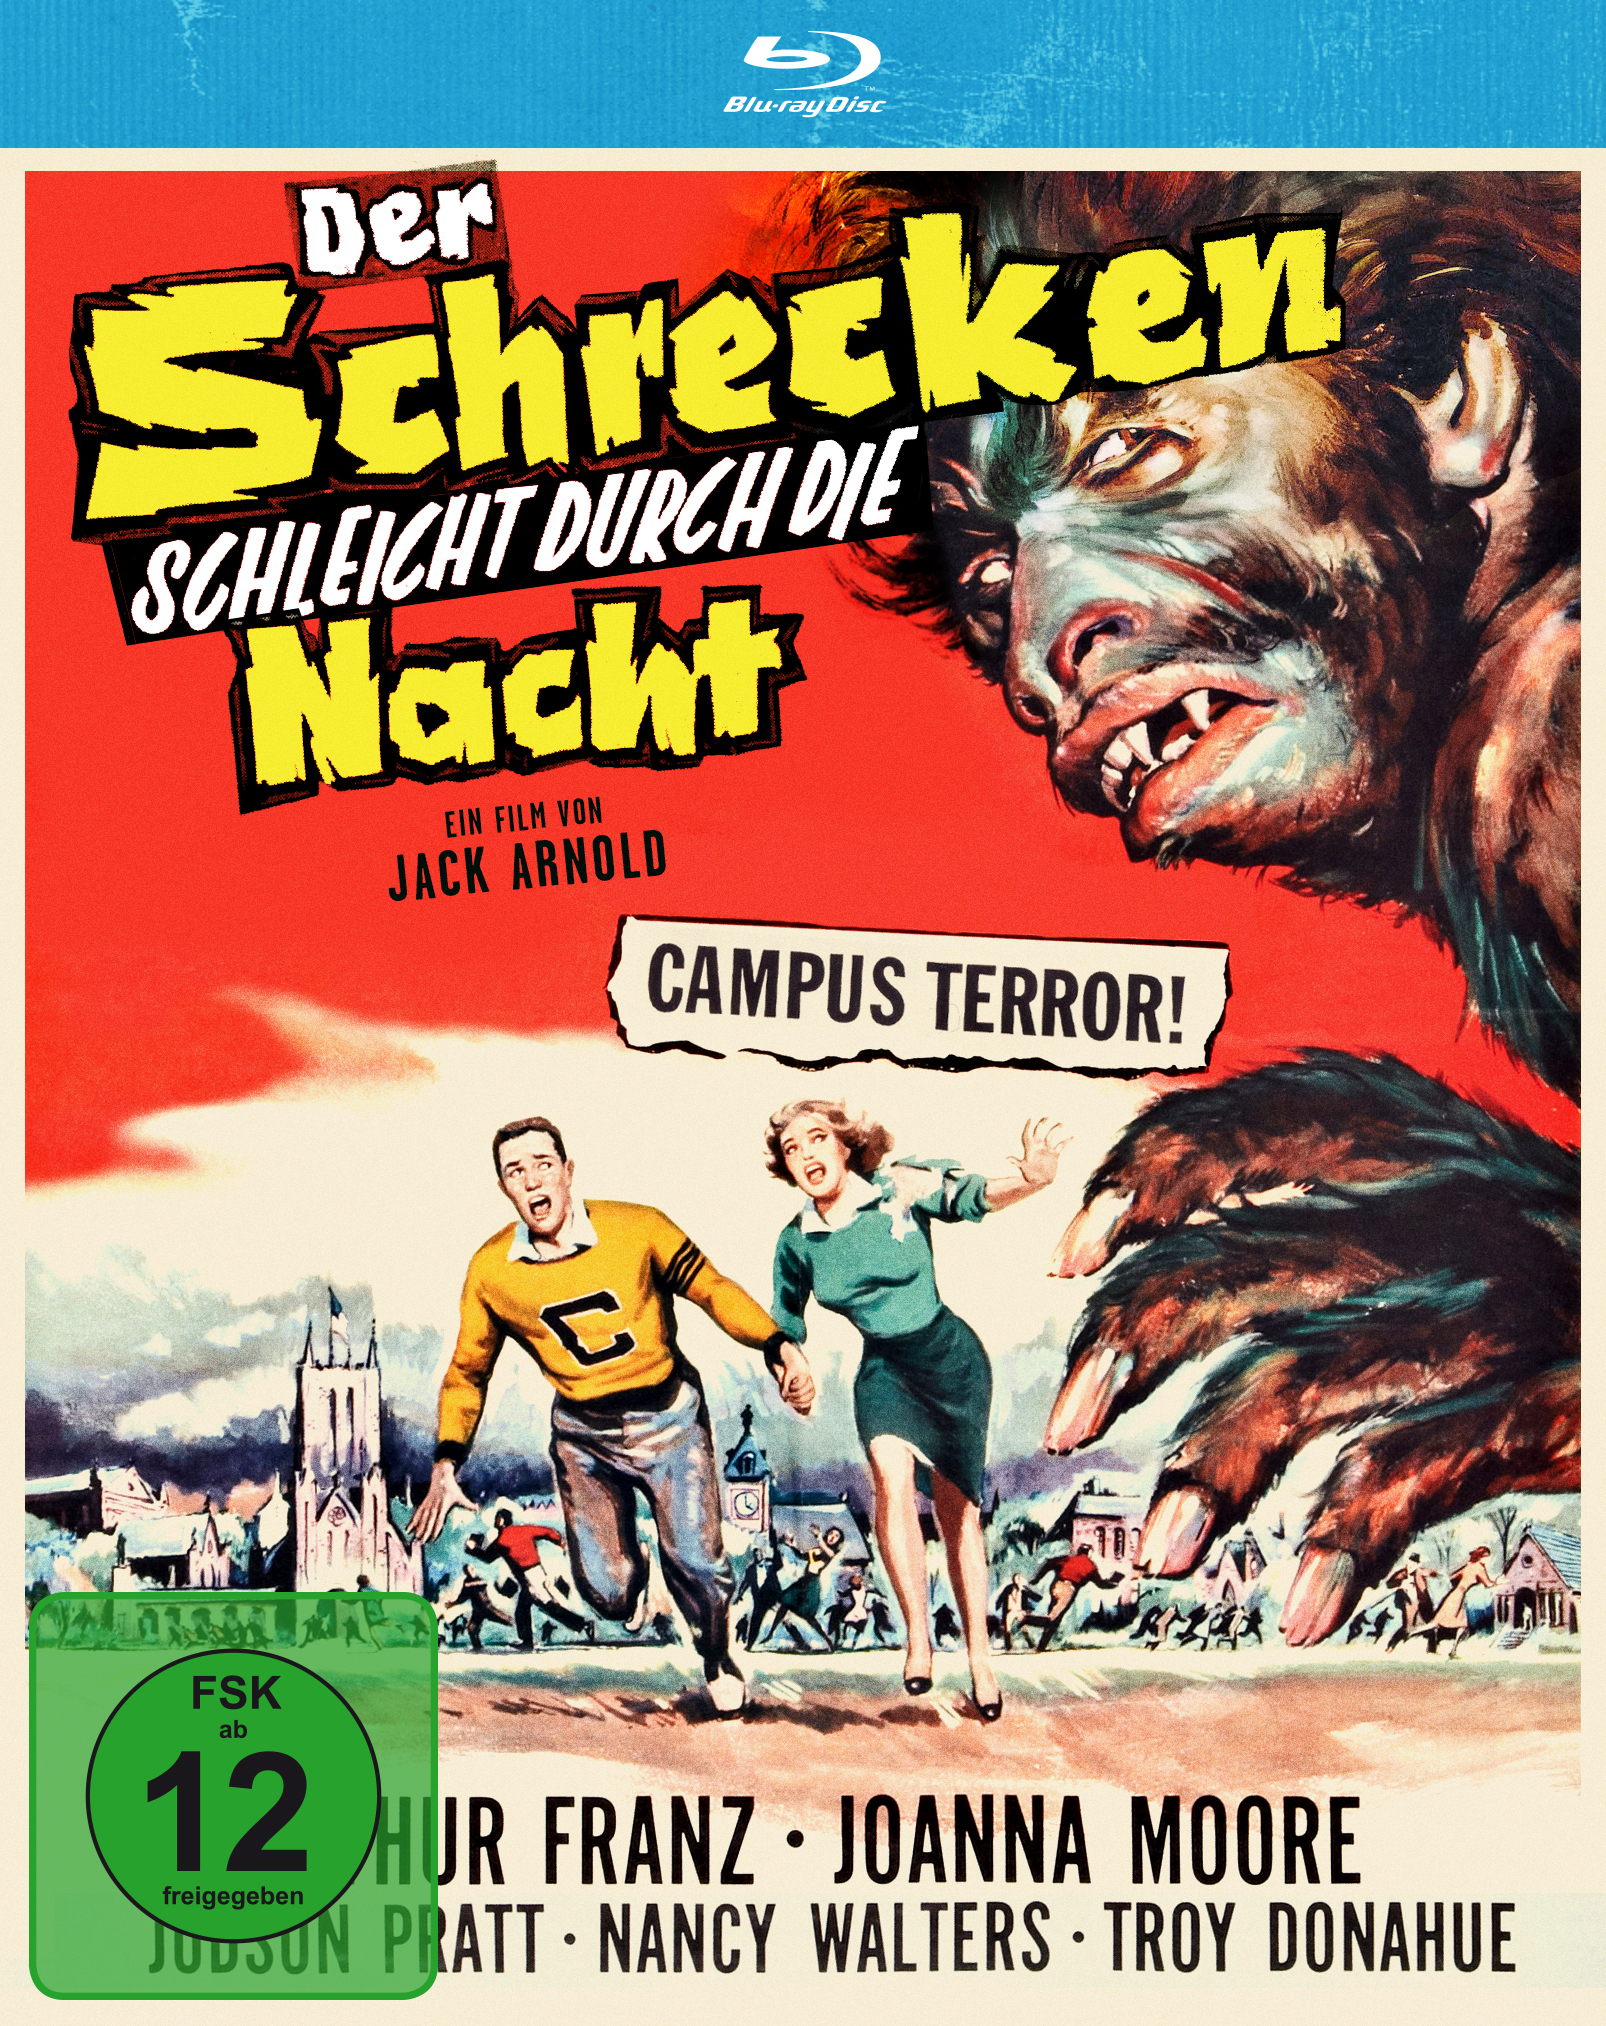 D.Schrecken schleicht durch die Nacht (Blu-ray) Cover